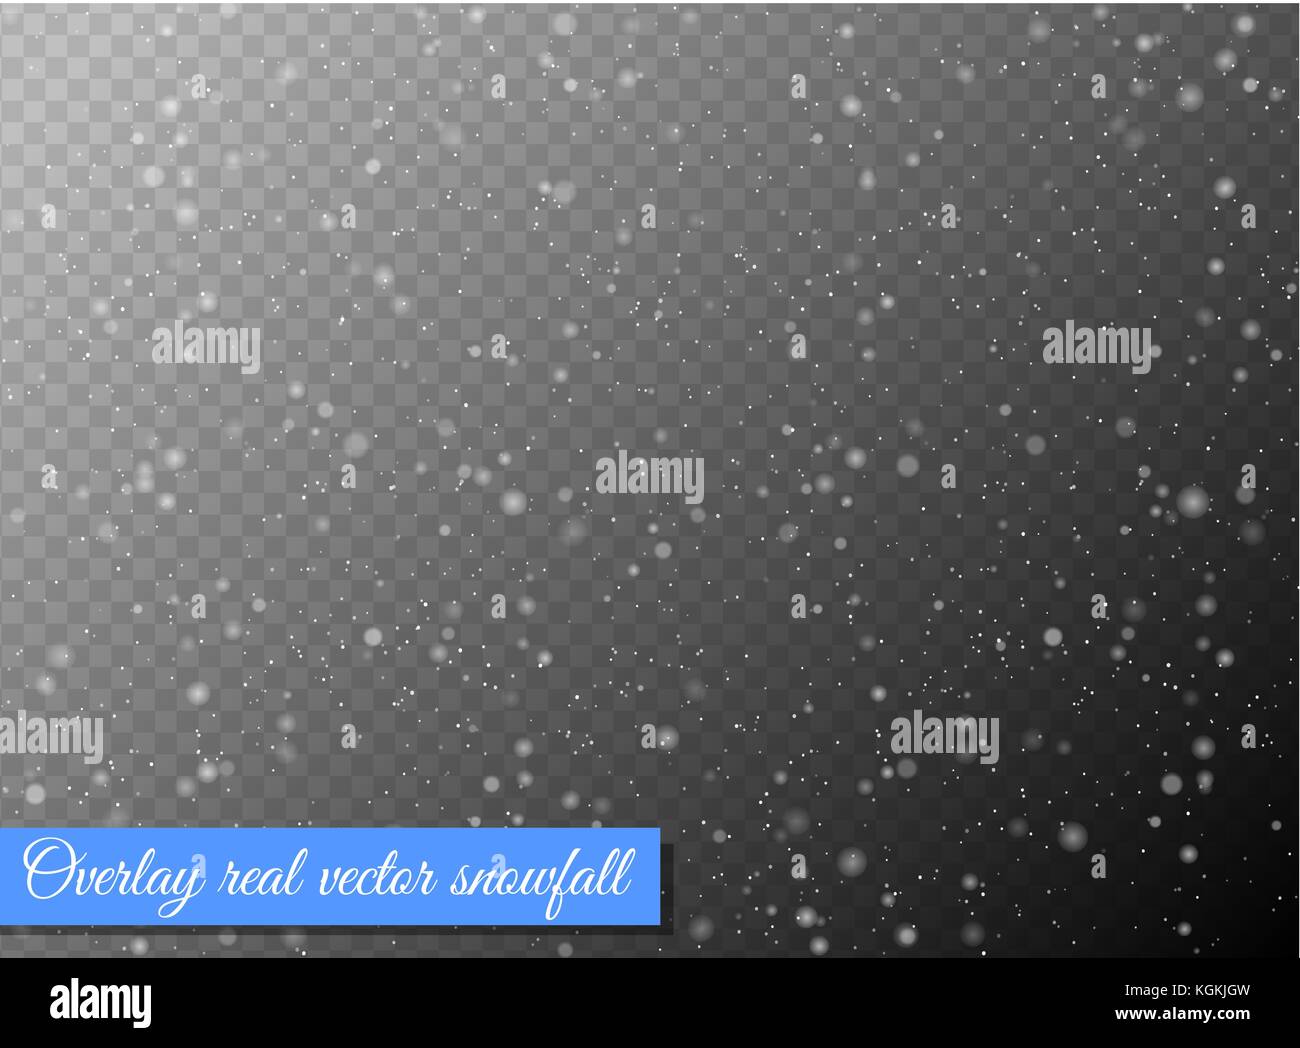 Die nahtlose Vektor weiß Schneefall Effekt auf schwarz transparent horizontale Hintergrund. overlay Schneeflocke Weihnachten oder Neujahr winter Wirkung. Stock Vektor